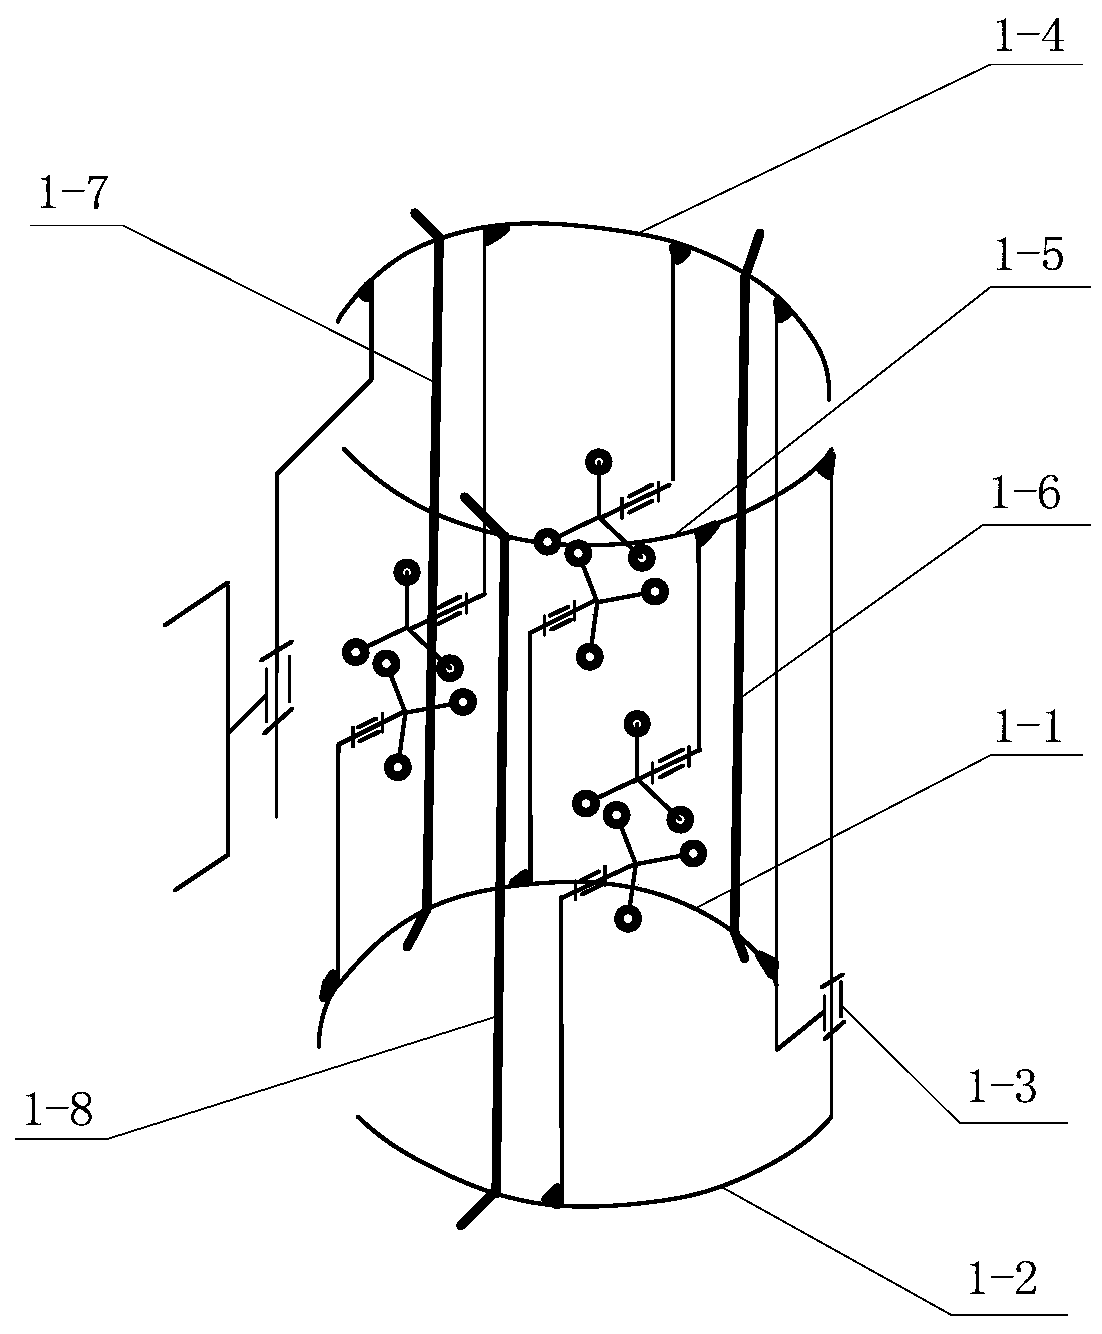 An insulator detection robot mechanism